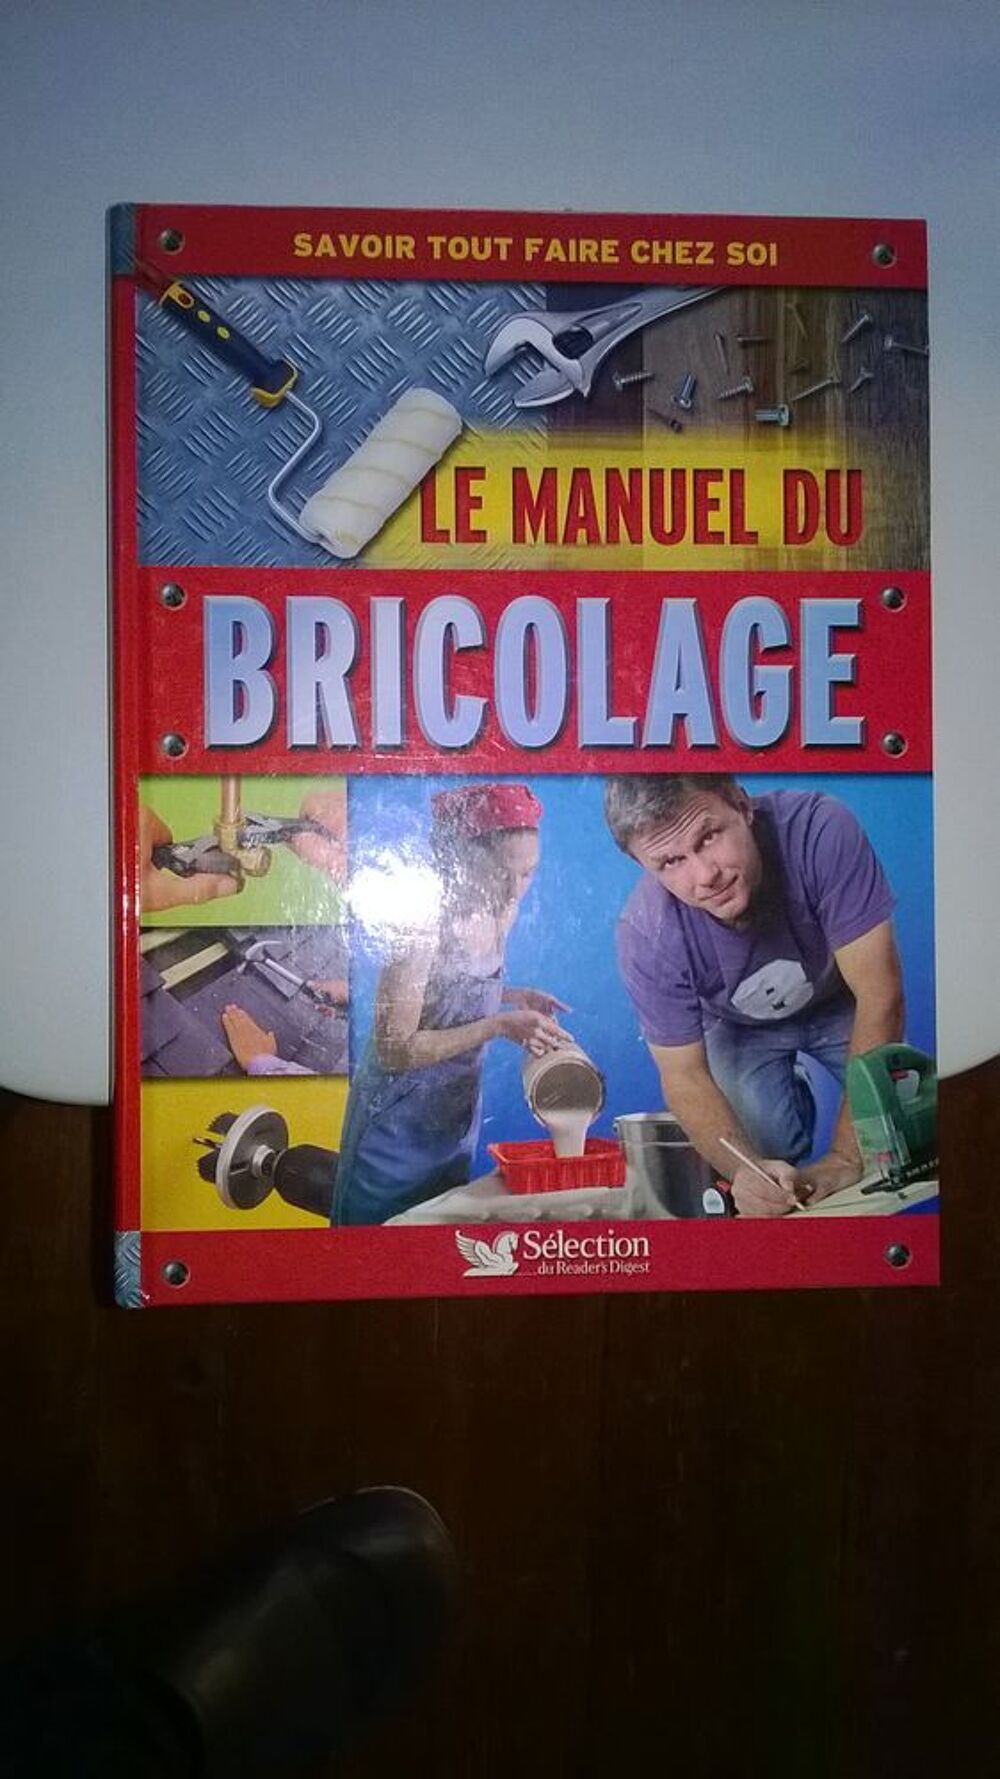 Le Manuel du Bricolage 505 pages
S&eacute;lection Reader s Digest
Bricolage